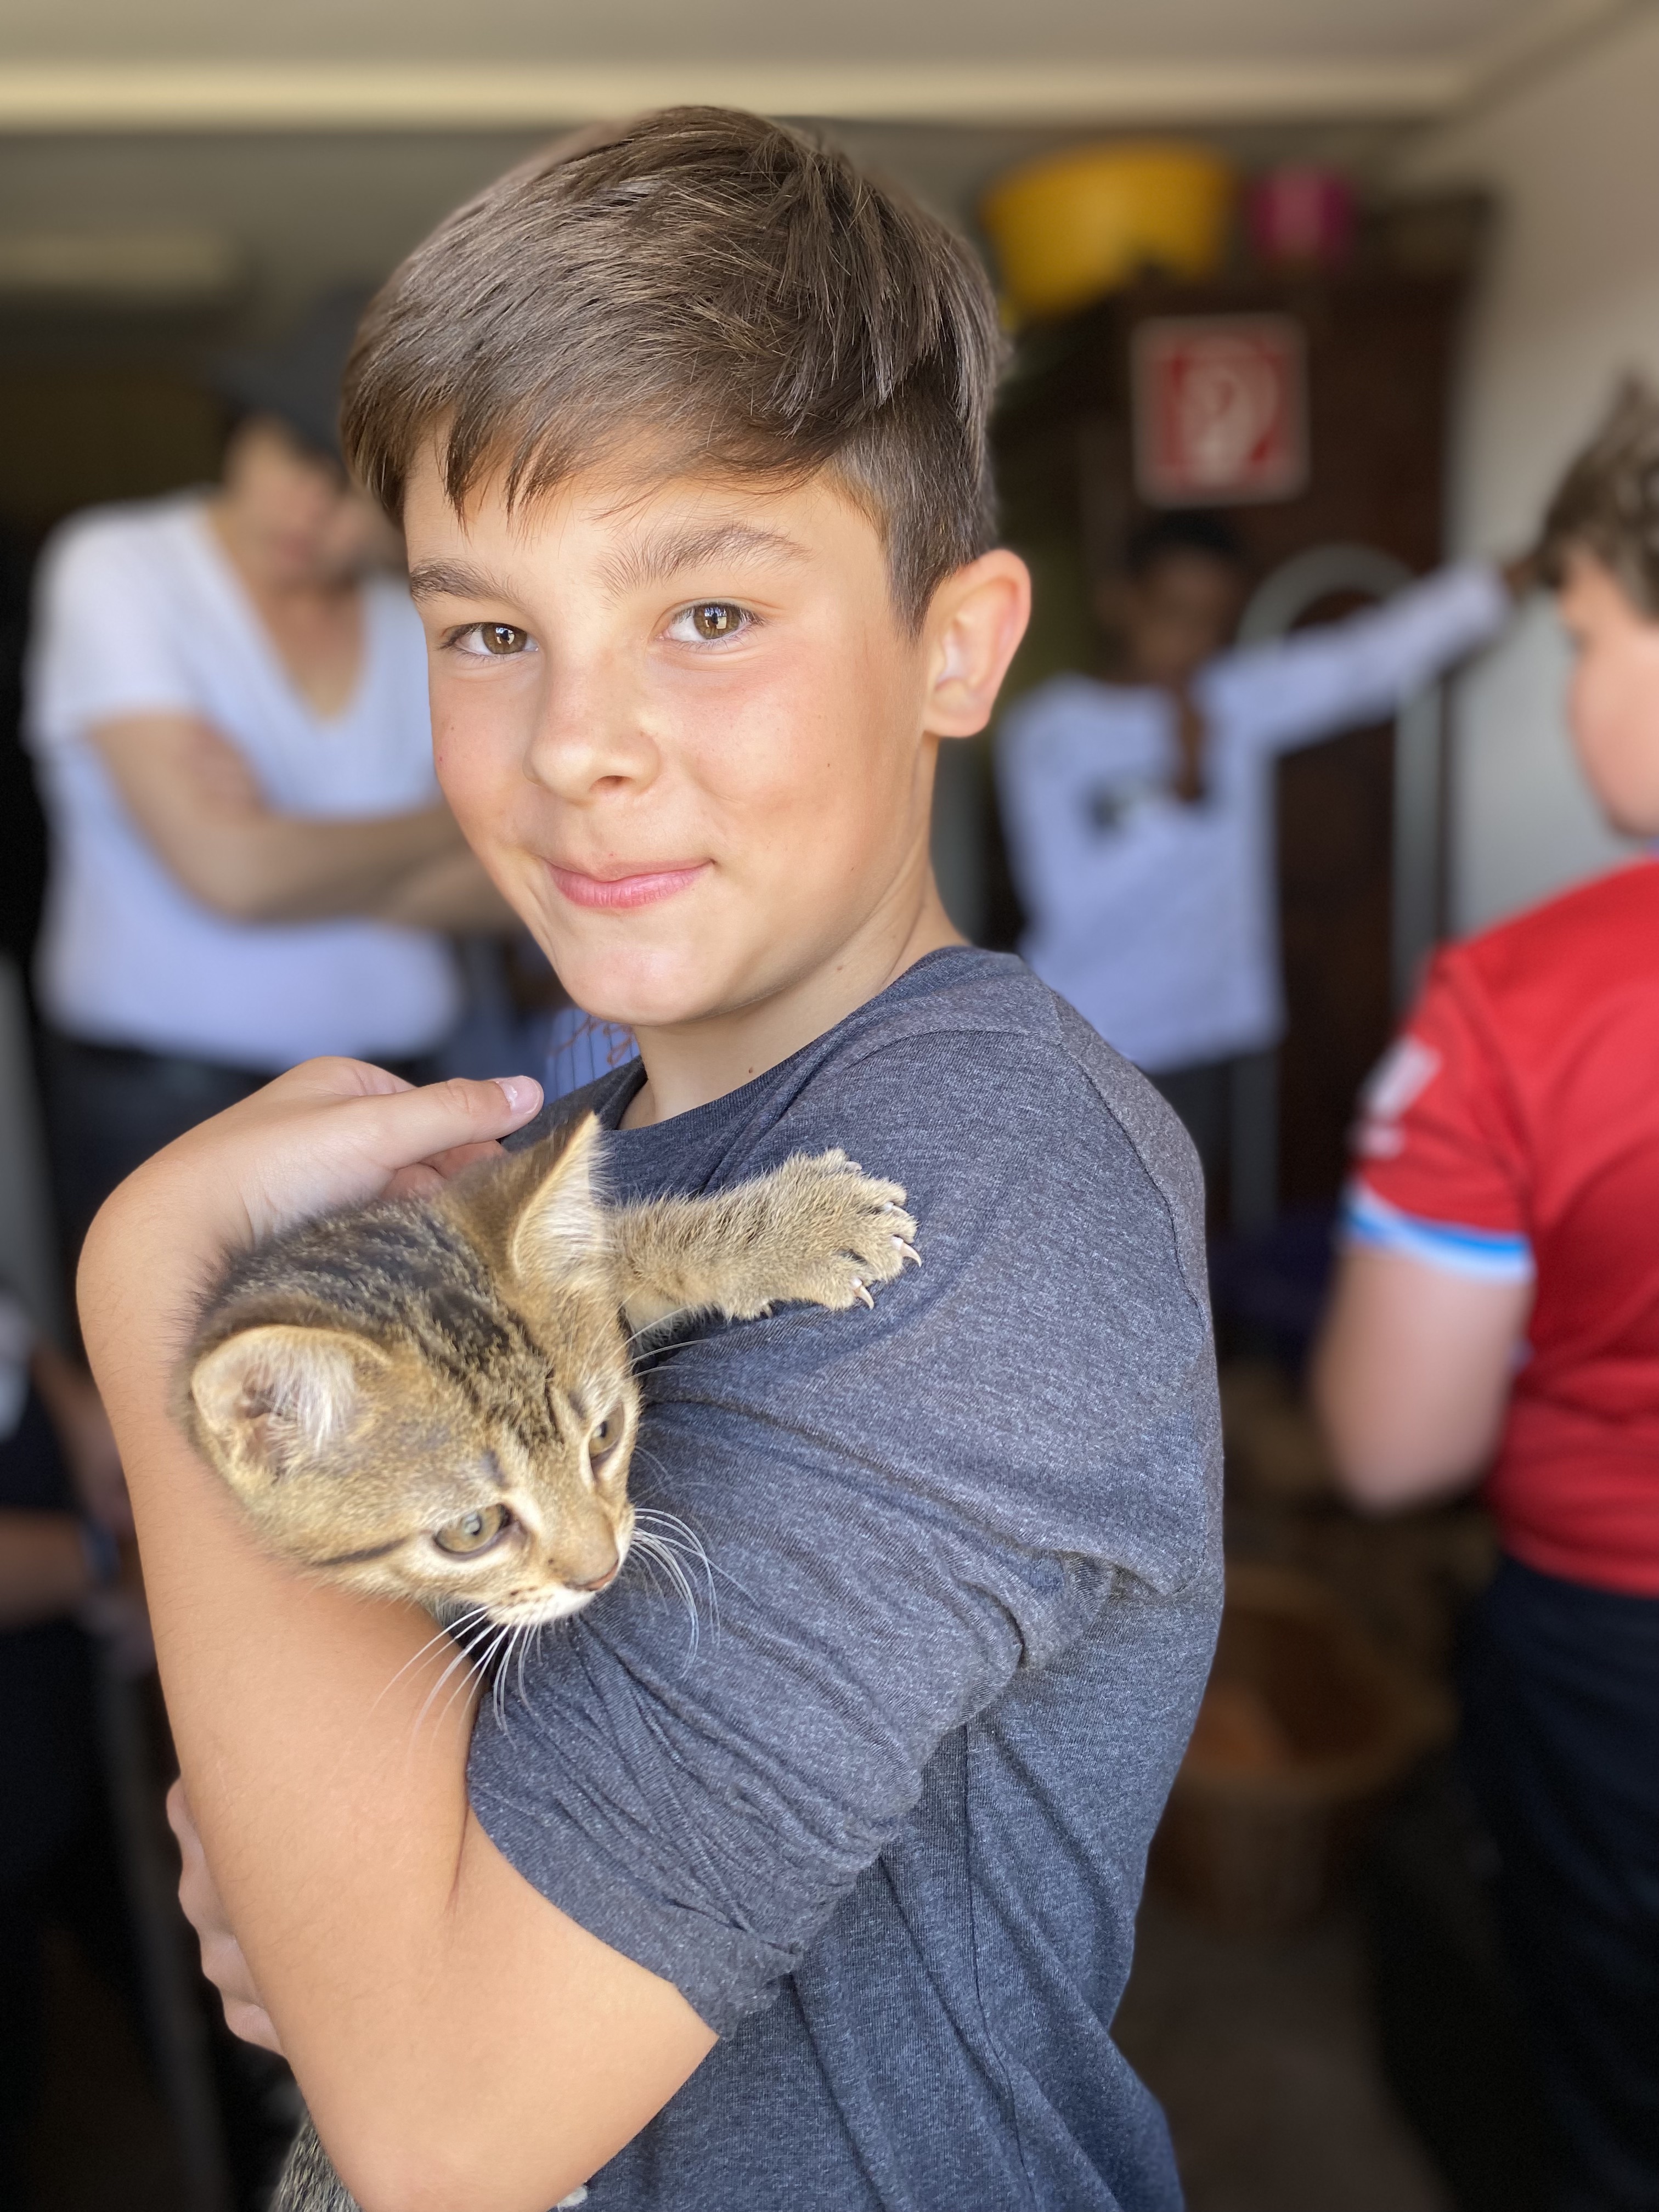  Schüler mit Katze auf dem Arm 